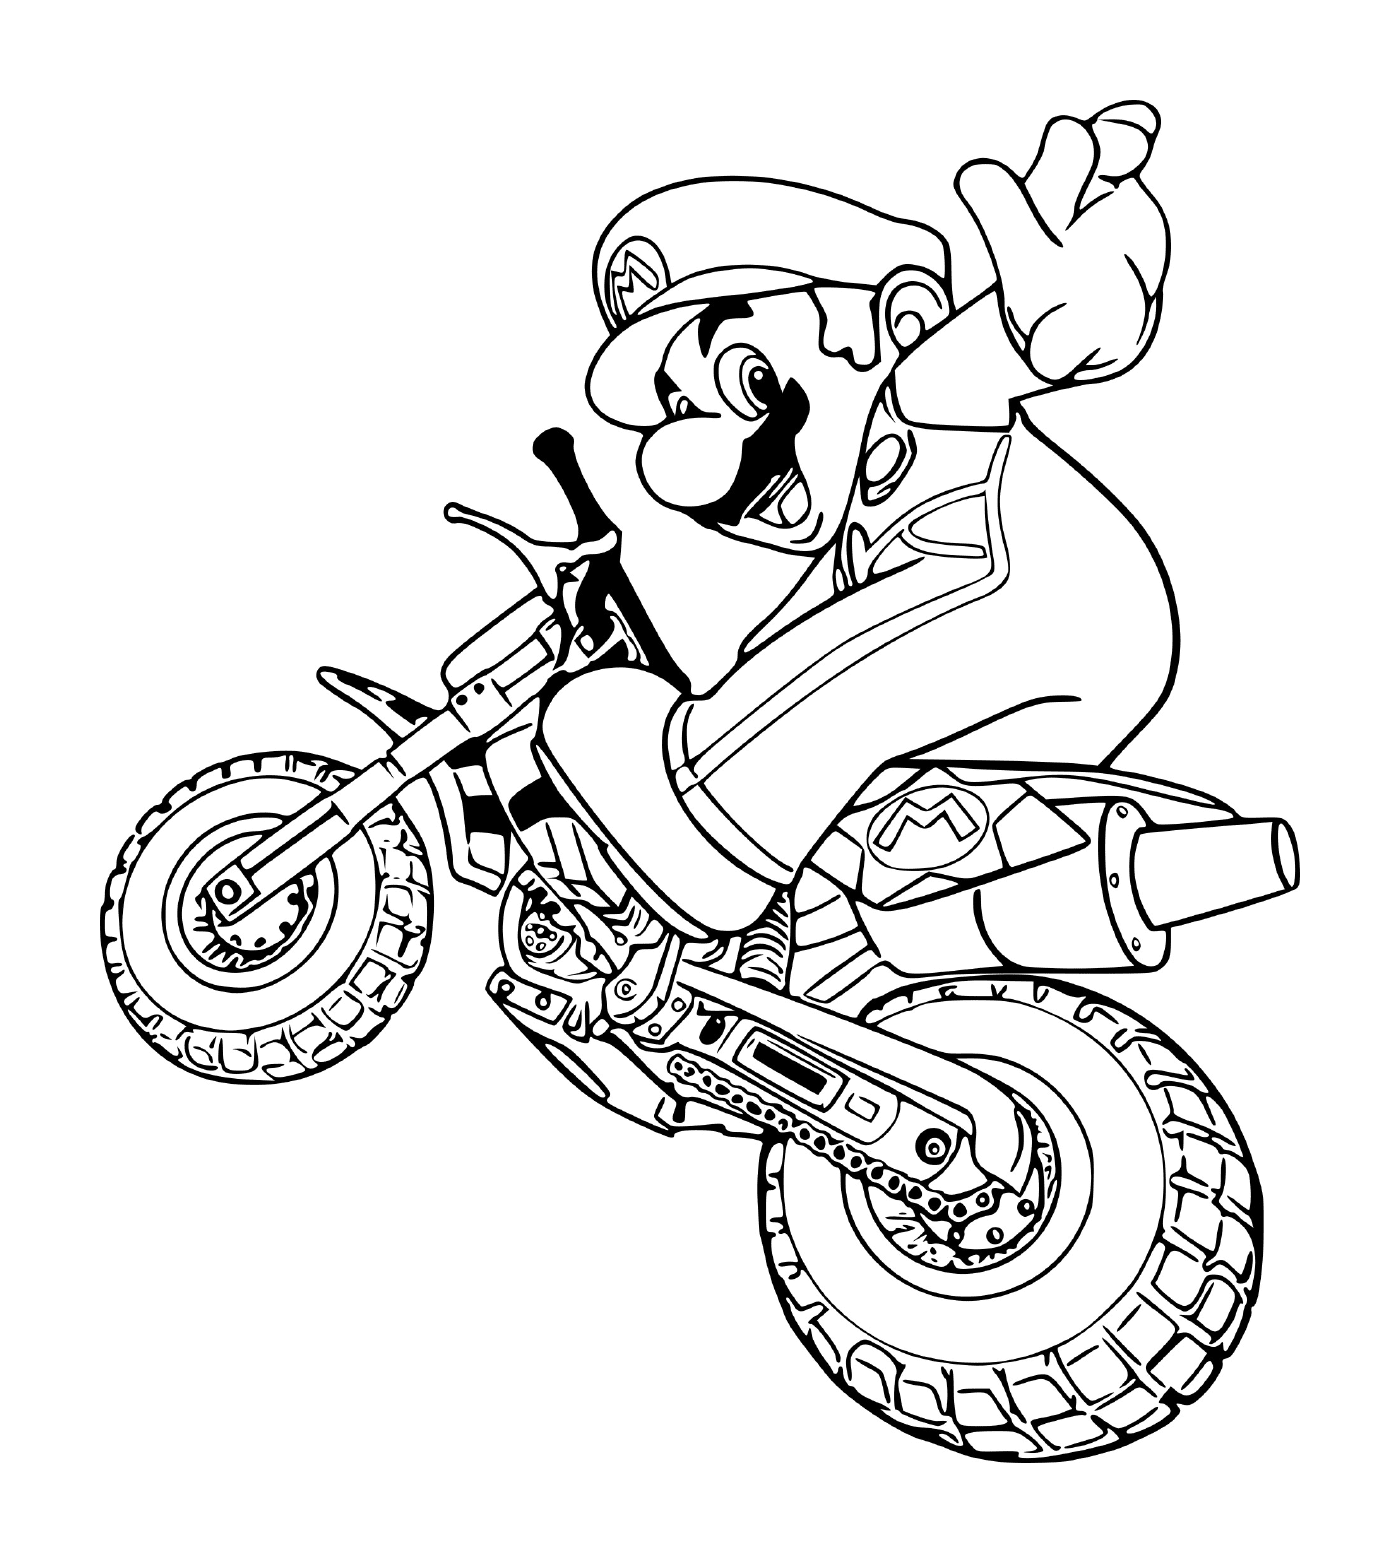  Mario auf einem Motorrad 